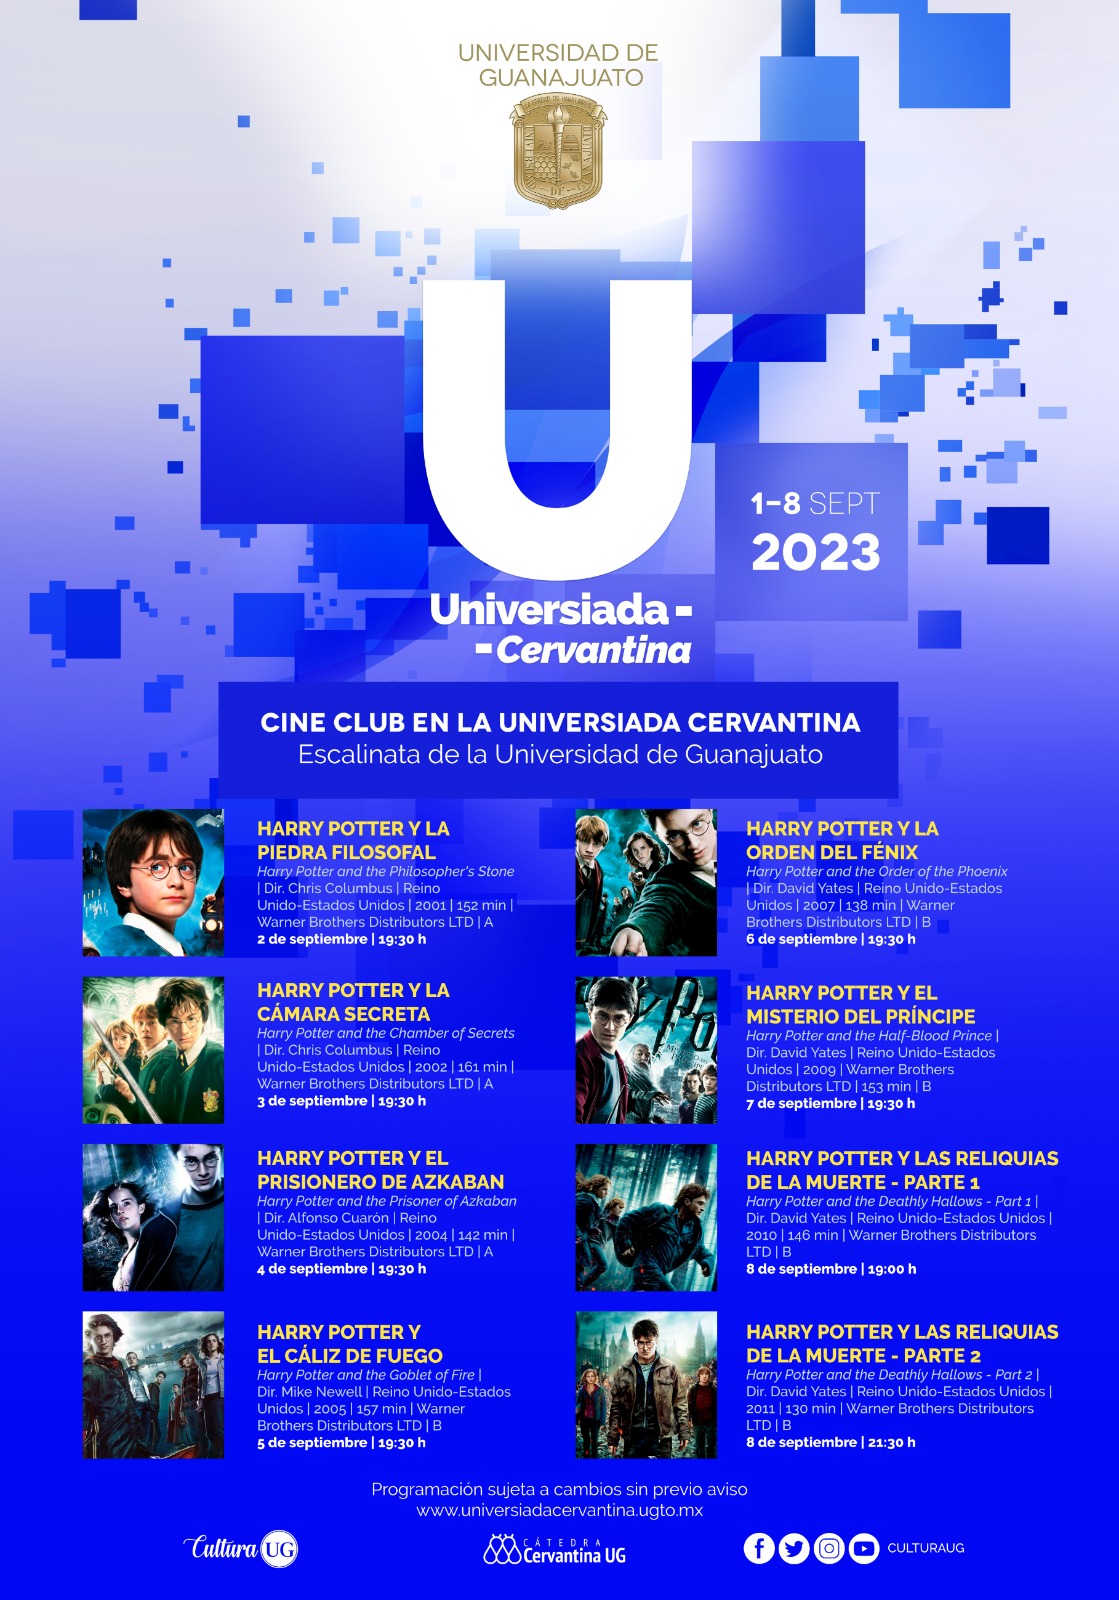 Proyección de la saga Harry Potter en la Universiada Cervantina de la Universidad de Guanajuato